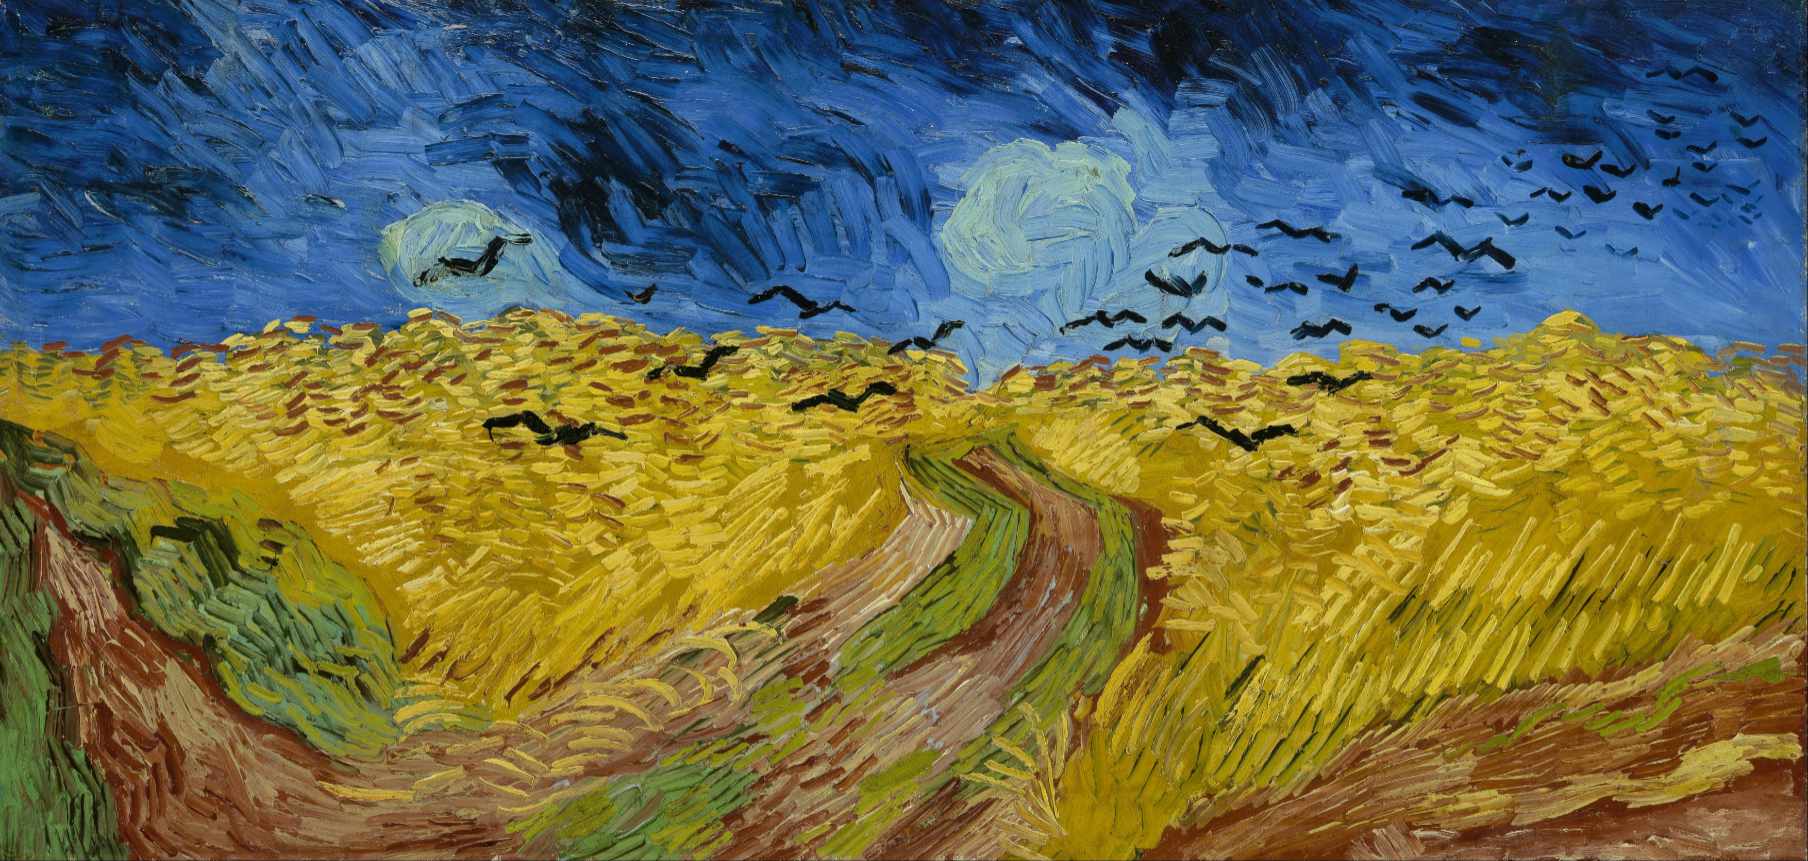 Obraz van Gogha - Pole pszenicy ze stadem wron